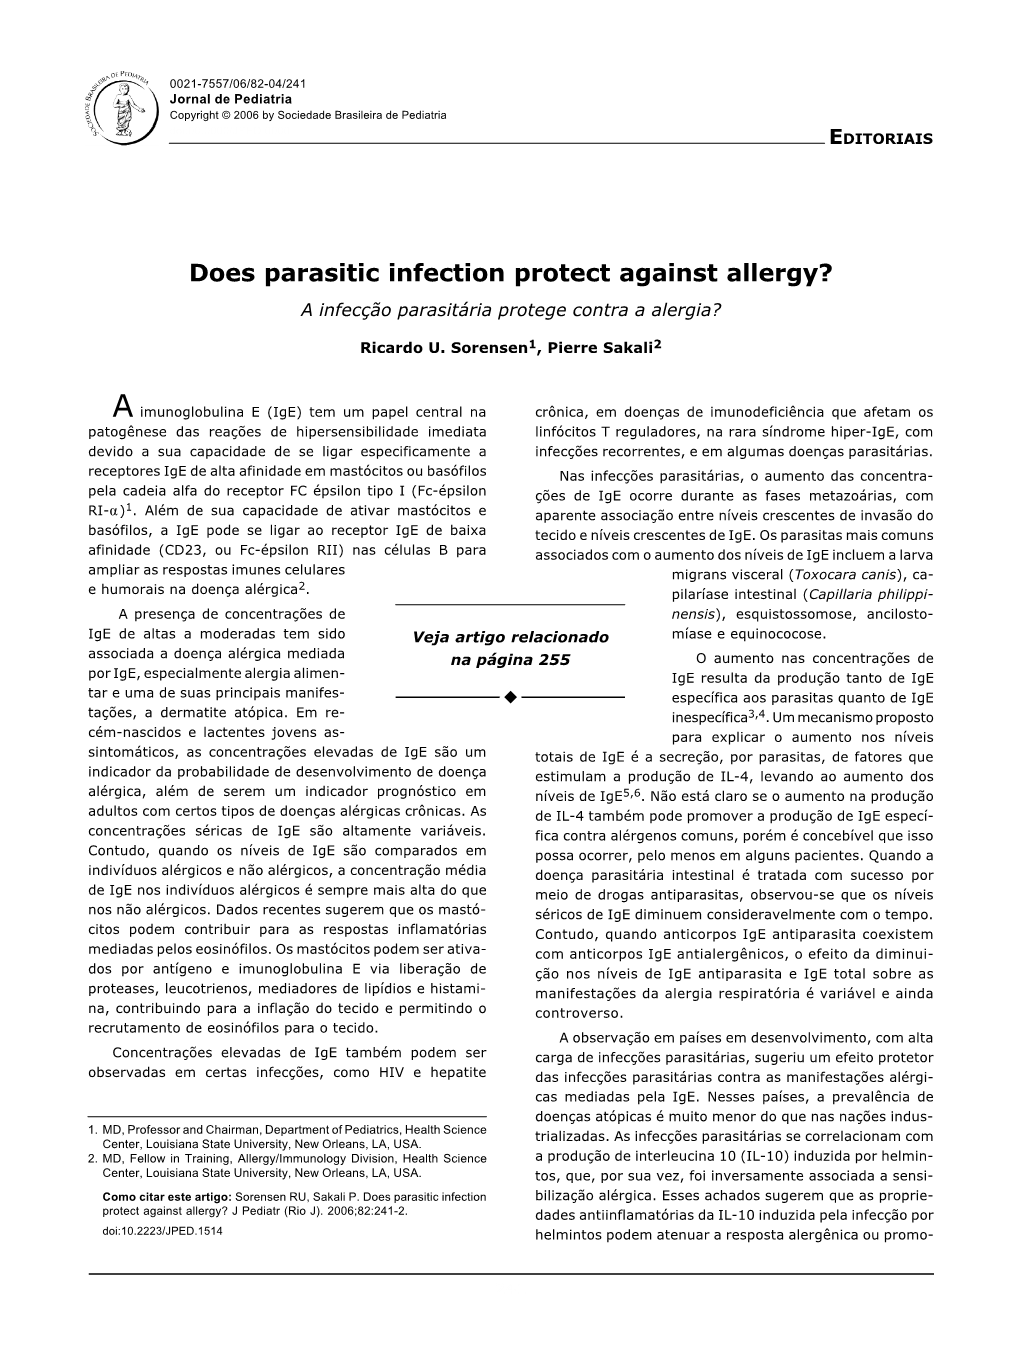 Does Parasitic Infection Protect Against Allergy? a Infecção Parasitária Protege Contra a Alergia?